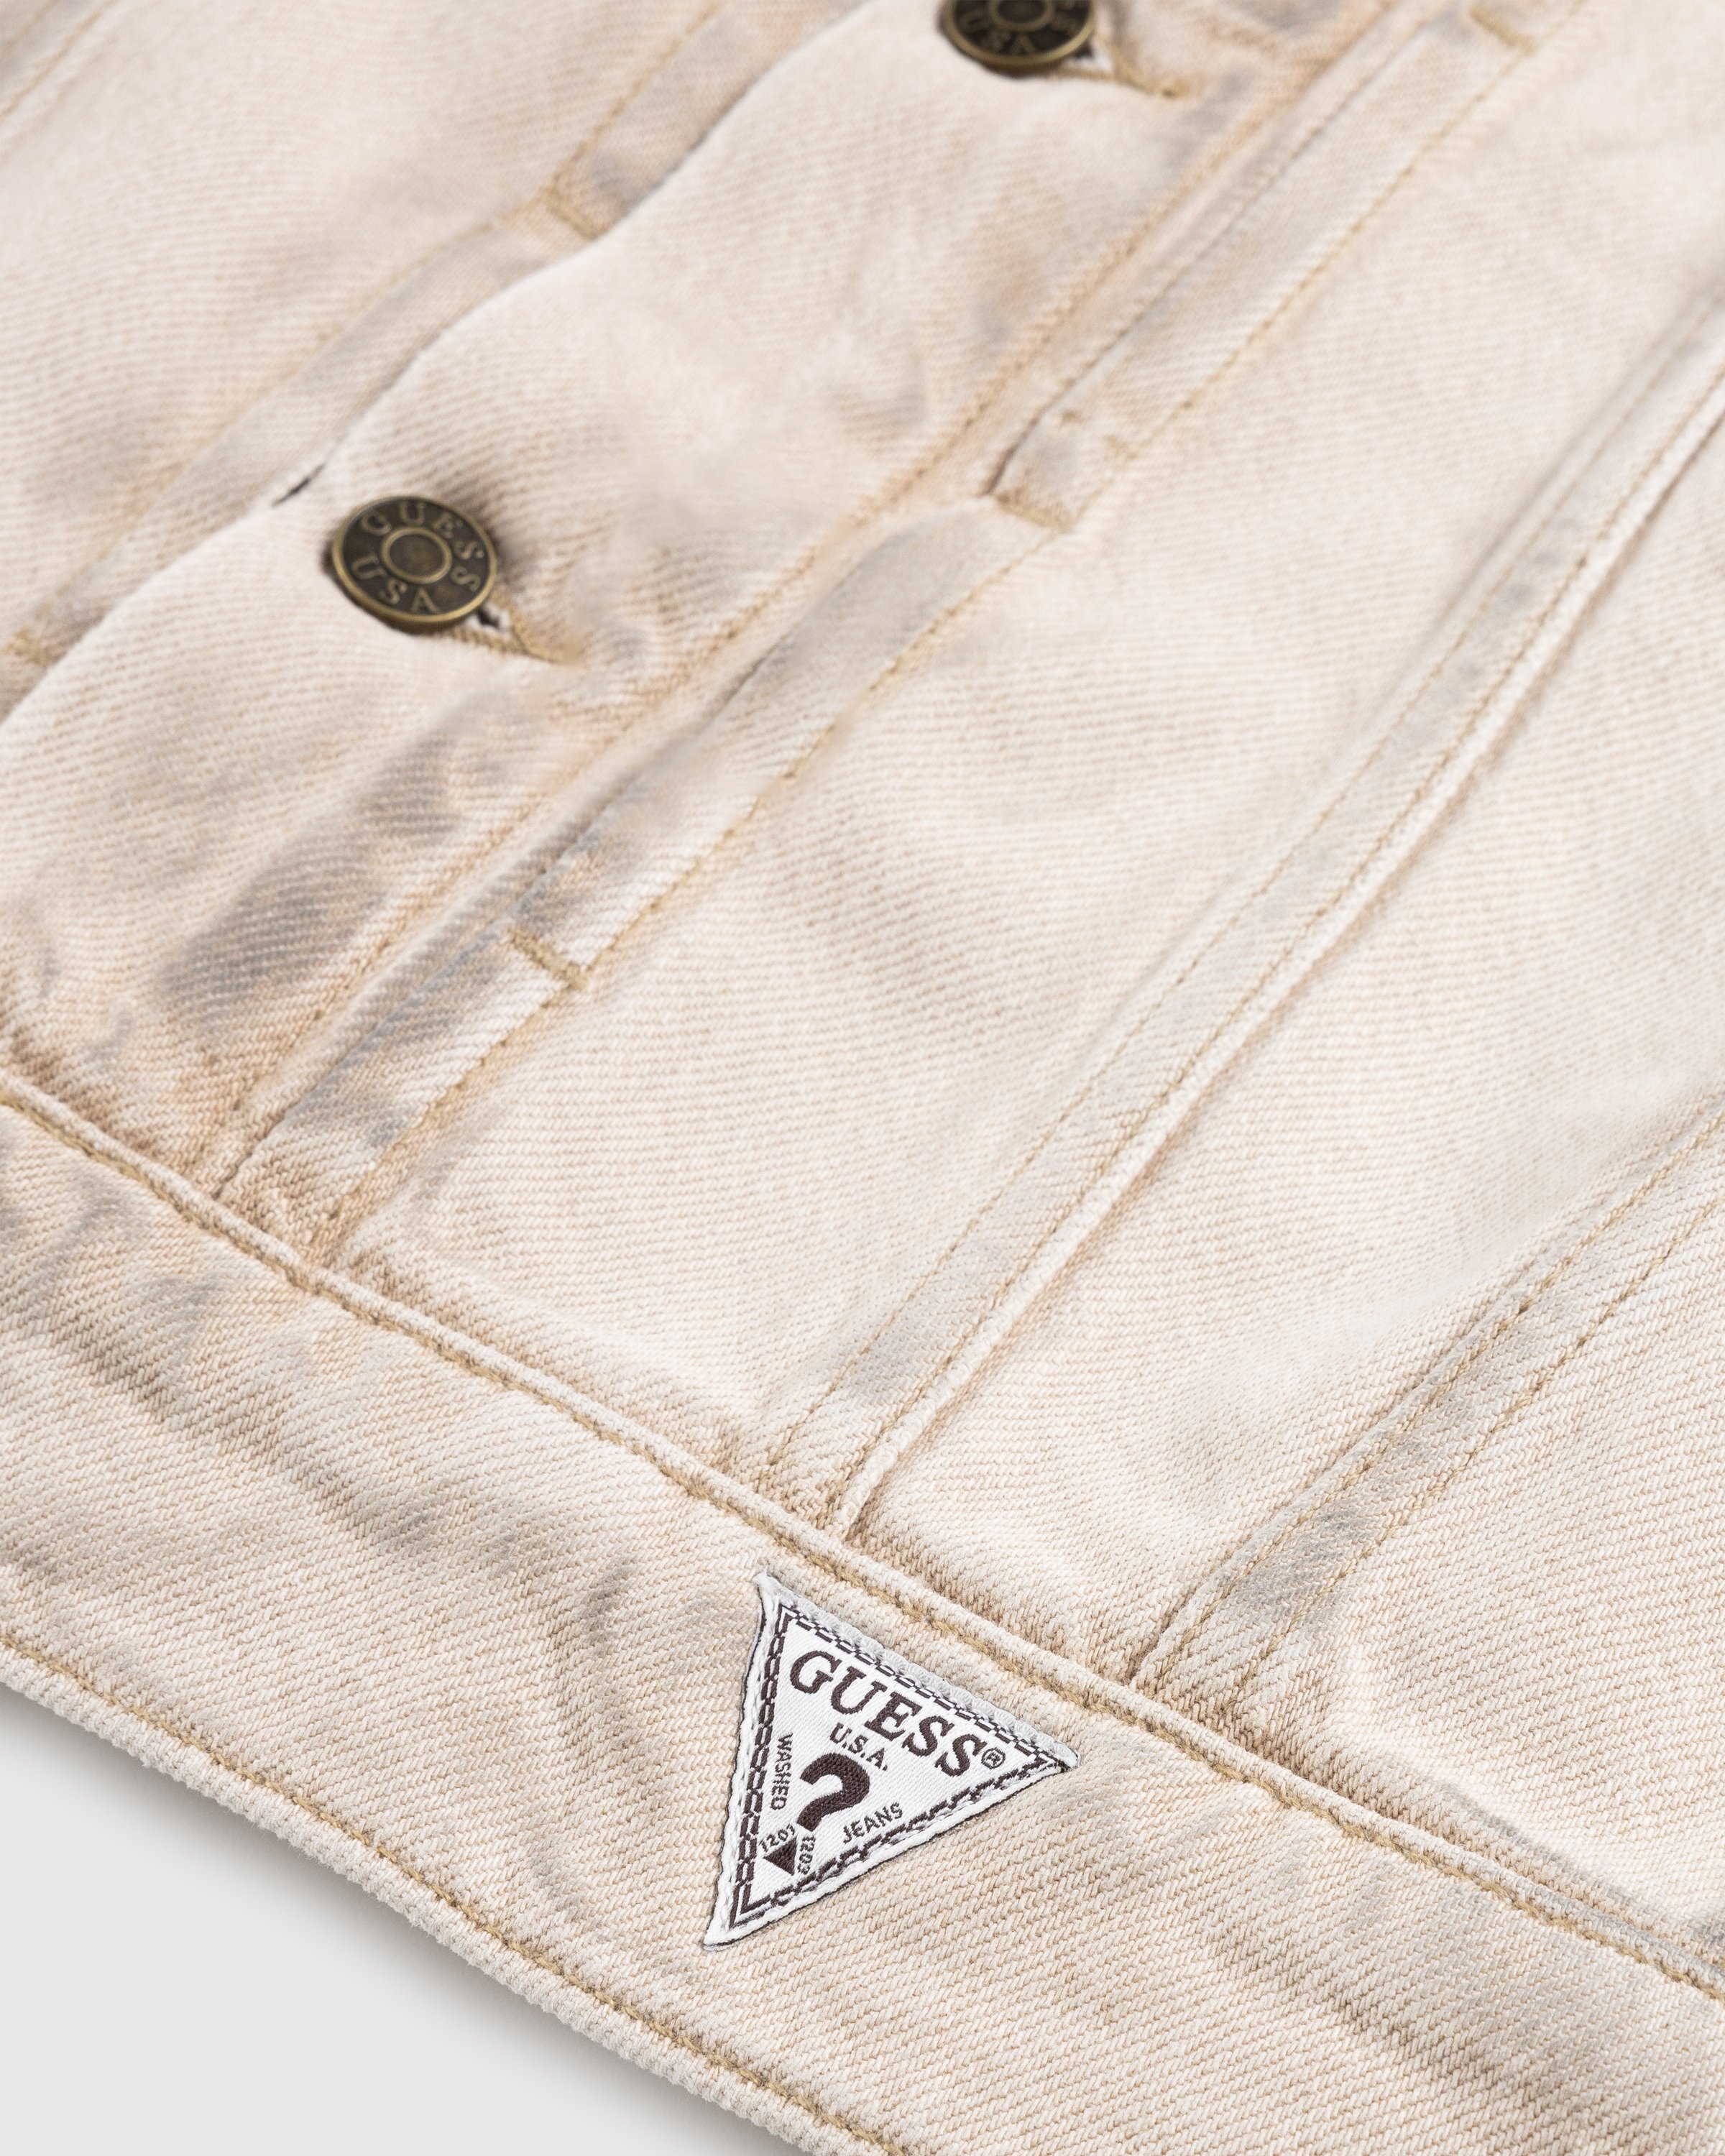 Guess USA - Vintage Denim Jacket Beige - Clothing - Beige - Image 6